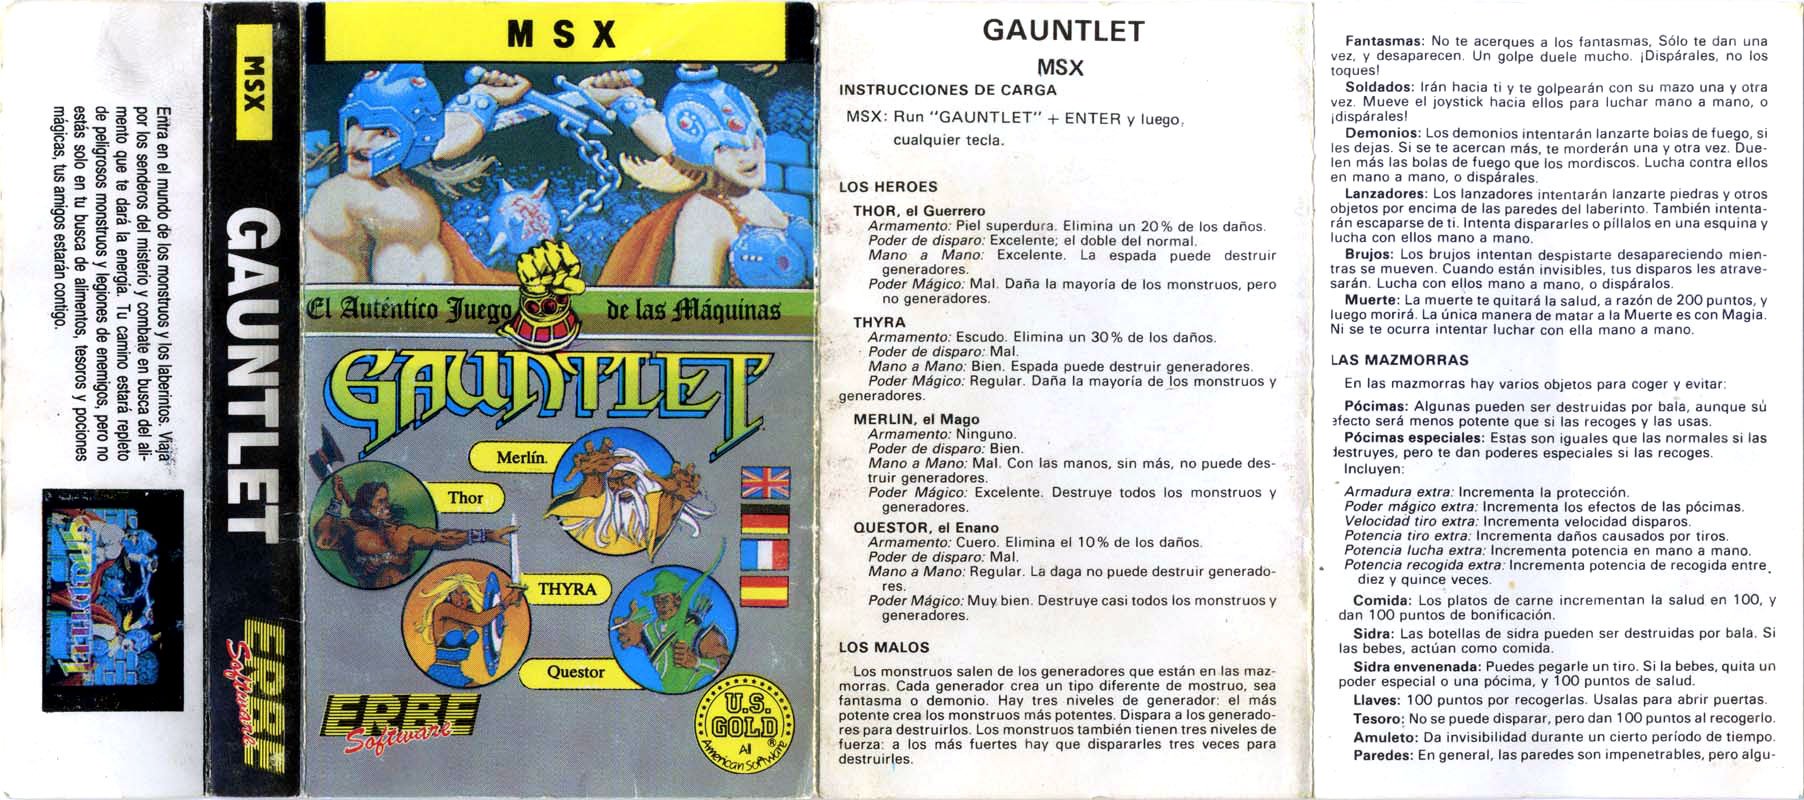 Caratula de Gauntlet para MSX